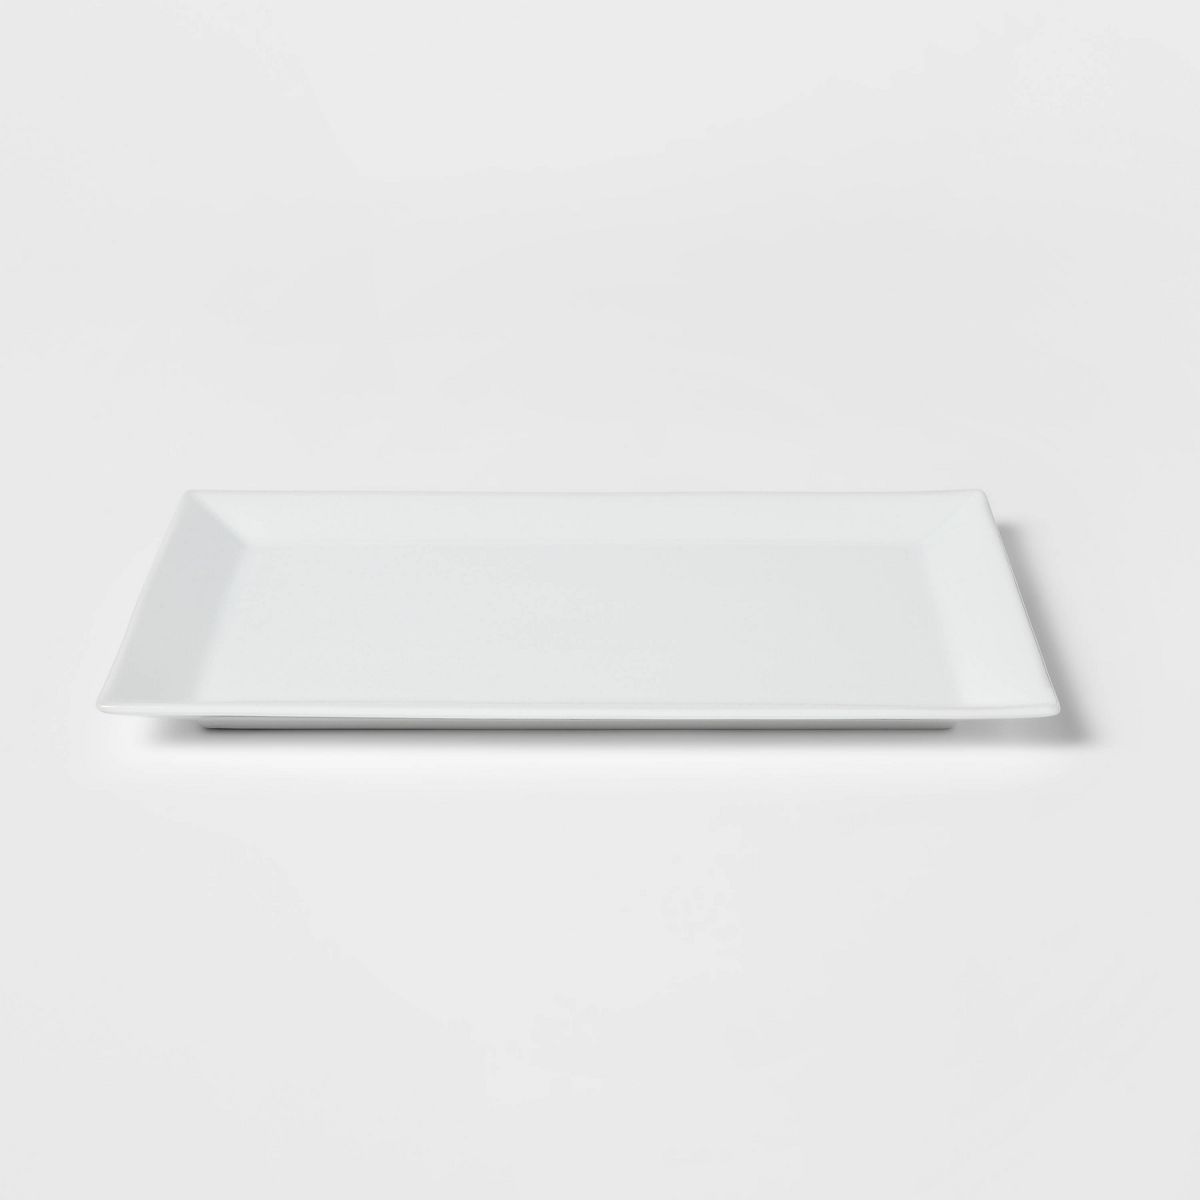 16" x 10" Porcelain Rectangular Rimmed Serving Platter White - Threshold™ | Target